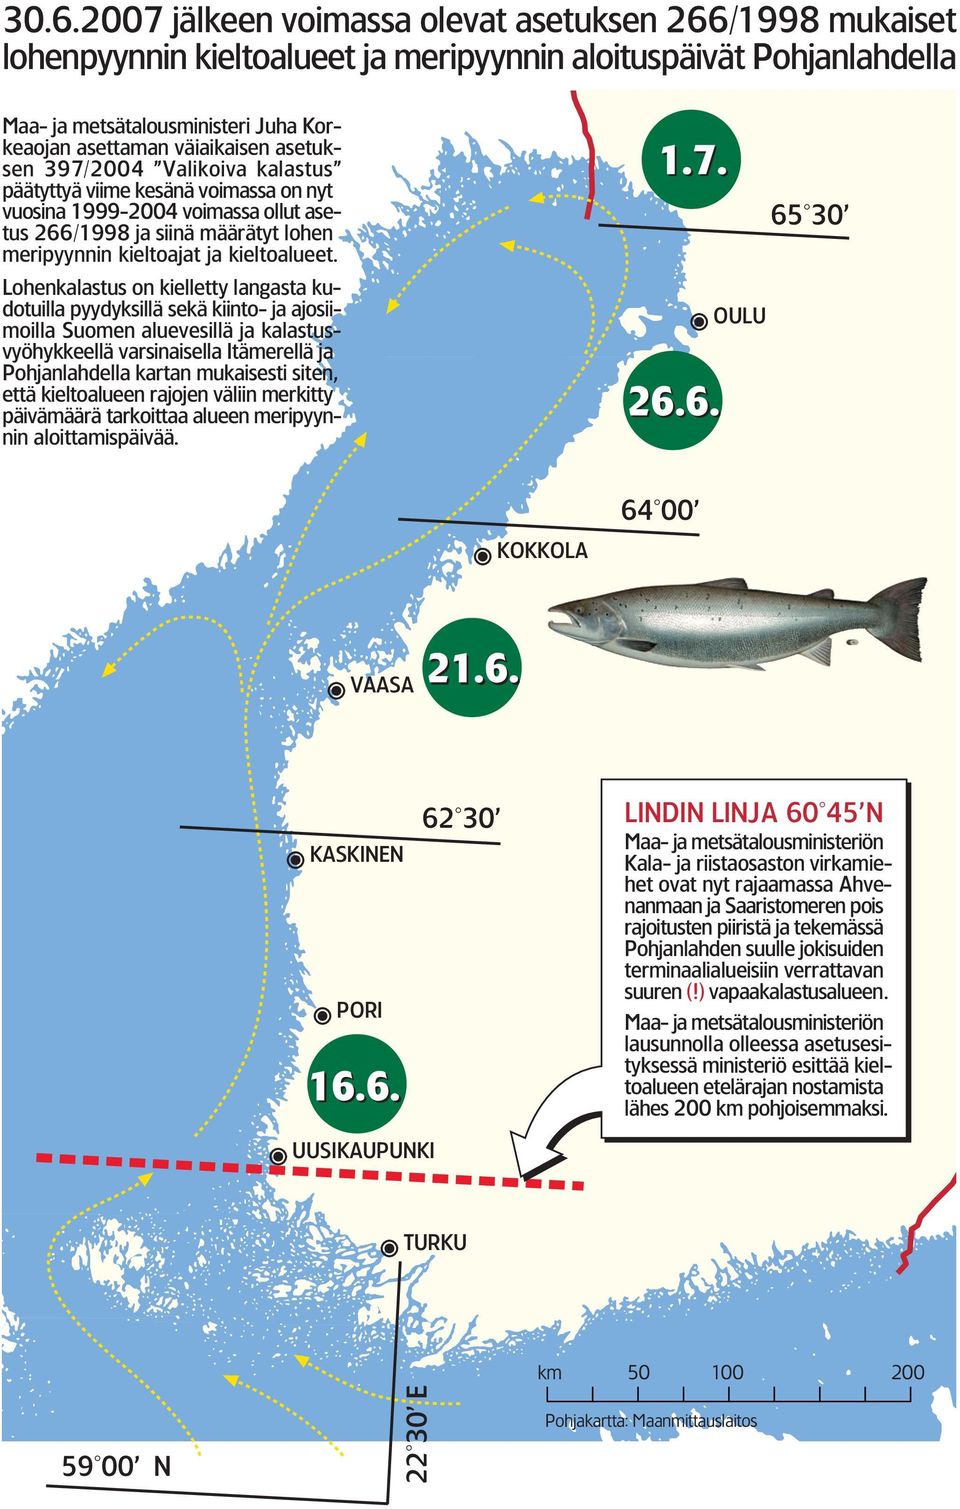 Lohenkalastus on kielletty langasta kudotuilla pyydyksillä sekä kiinto ja ajosiimoilla Suomen aluevesillä ja kalastusvyöhykkeellä varsinaisella Itämerellä ja Pohjanlahdella kartan mukaisesti siten,